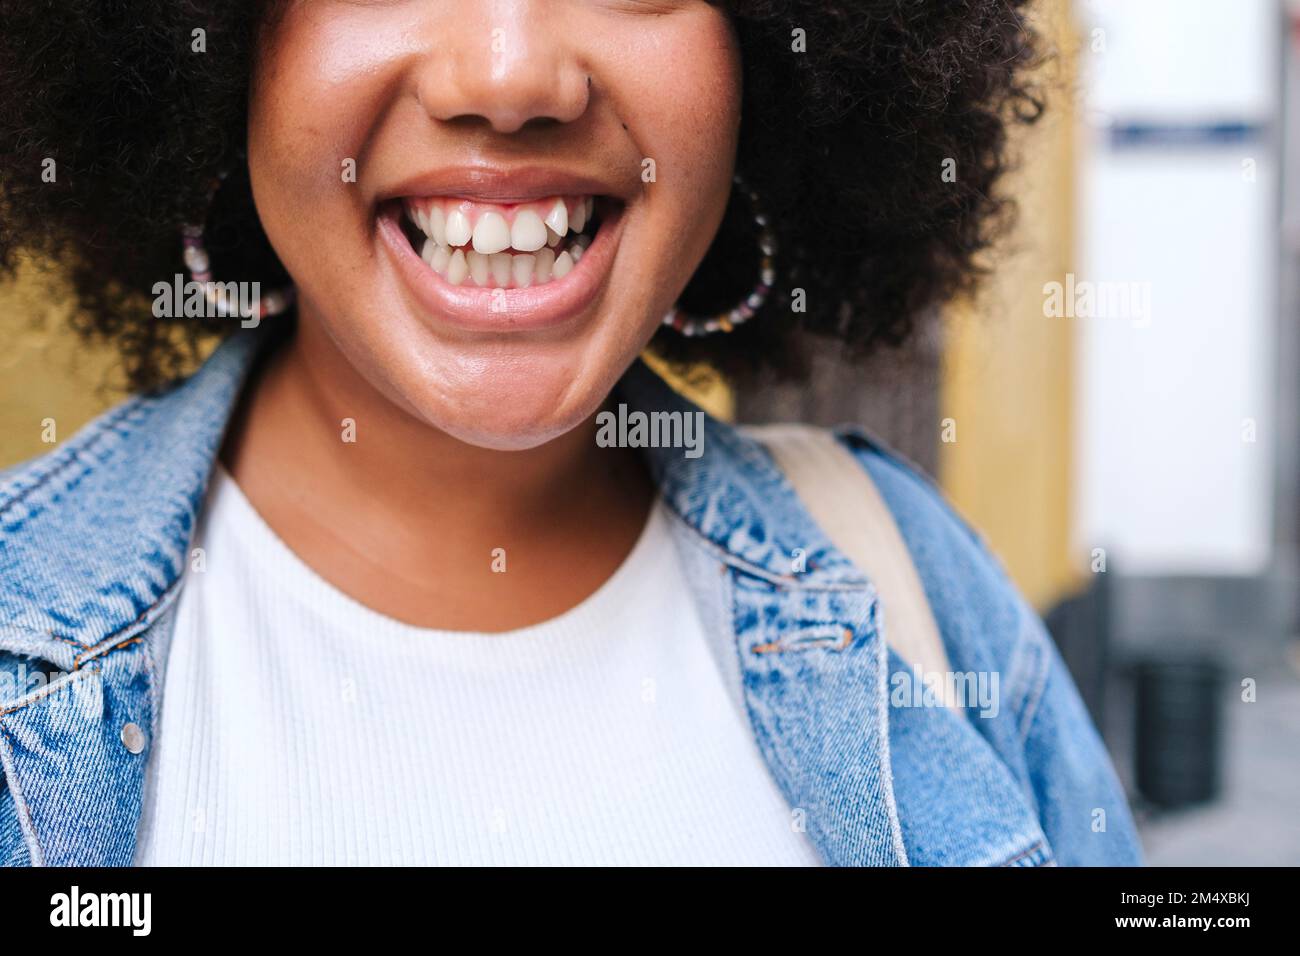 Jeune femme joyeuse montrant un sourire crasseux Banque D'Images